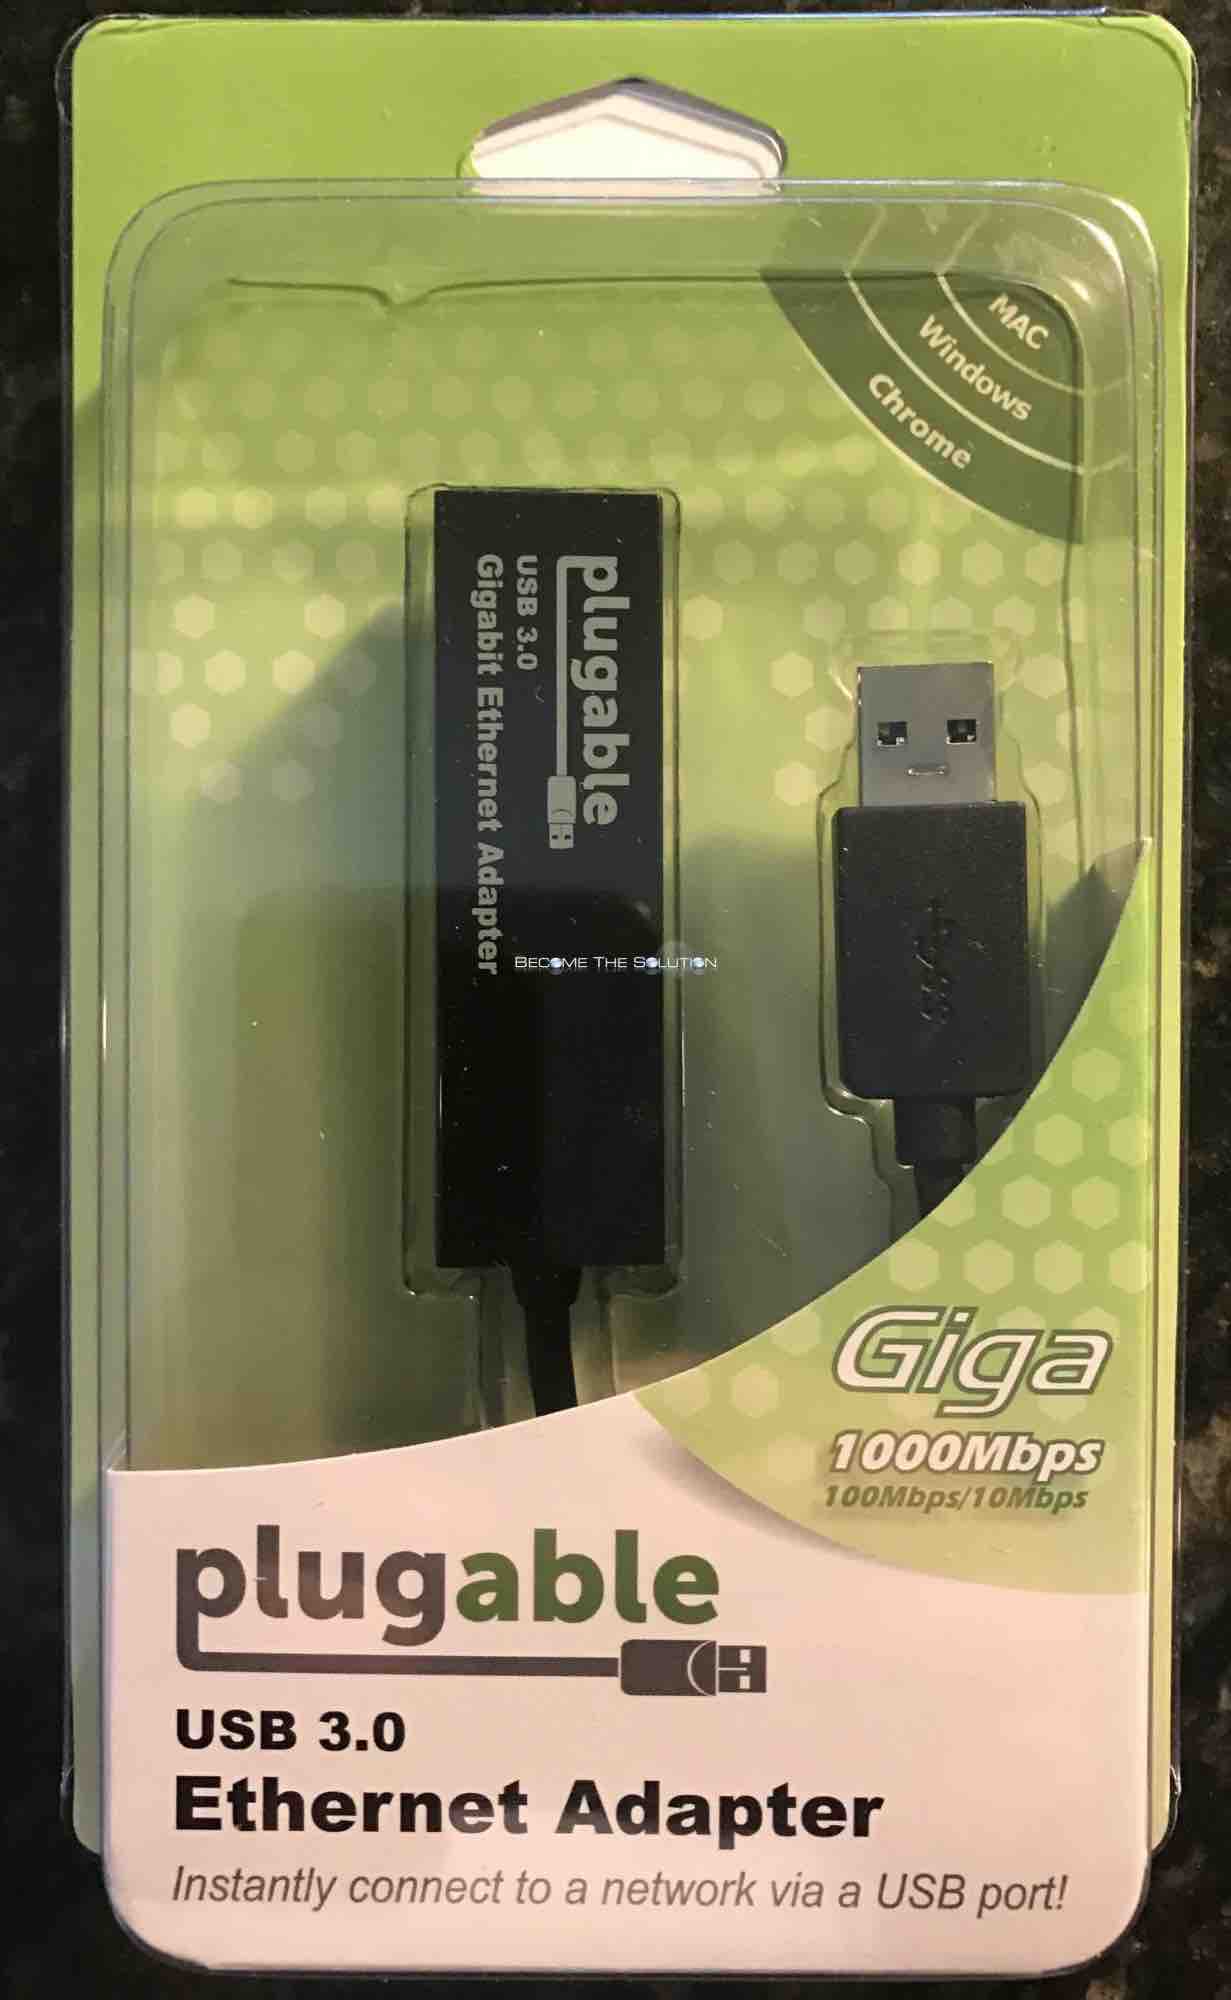 Review: Plugable USB 3.0 Gigabit Ethernet Adapter Macbook Air